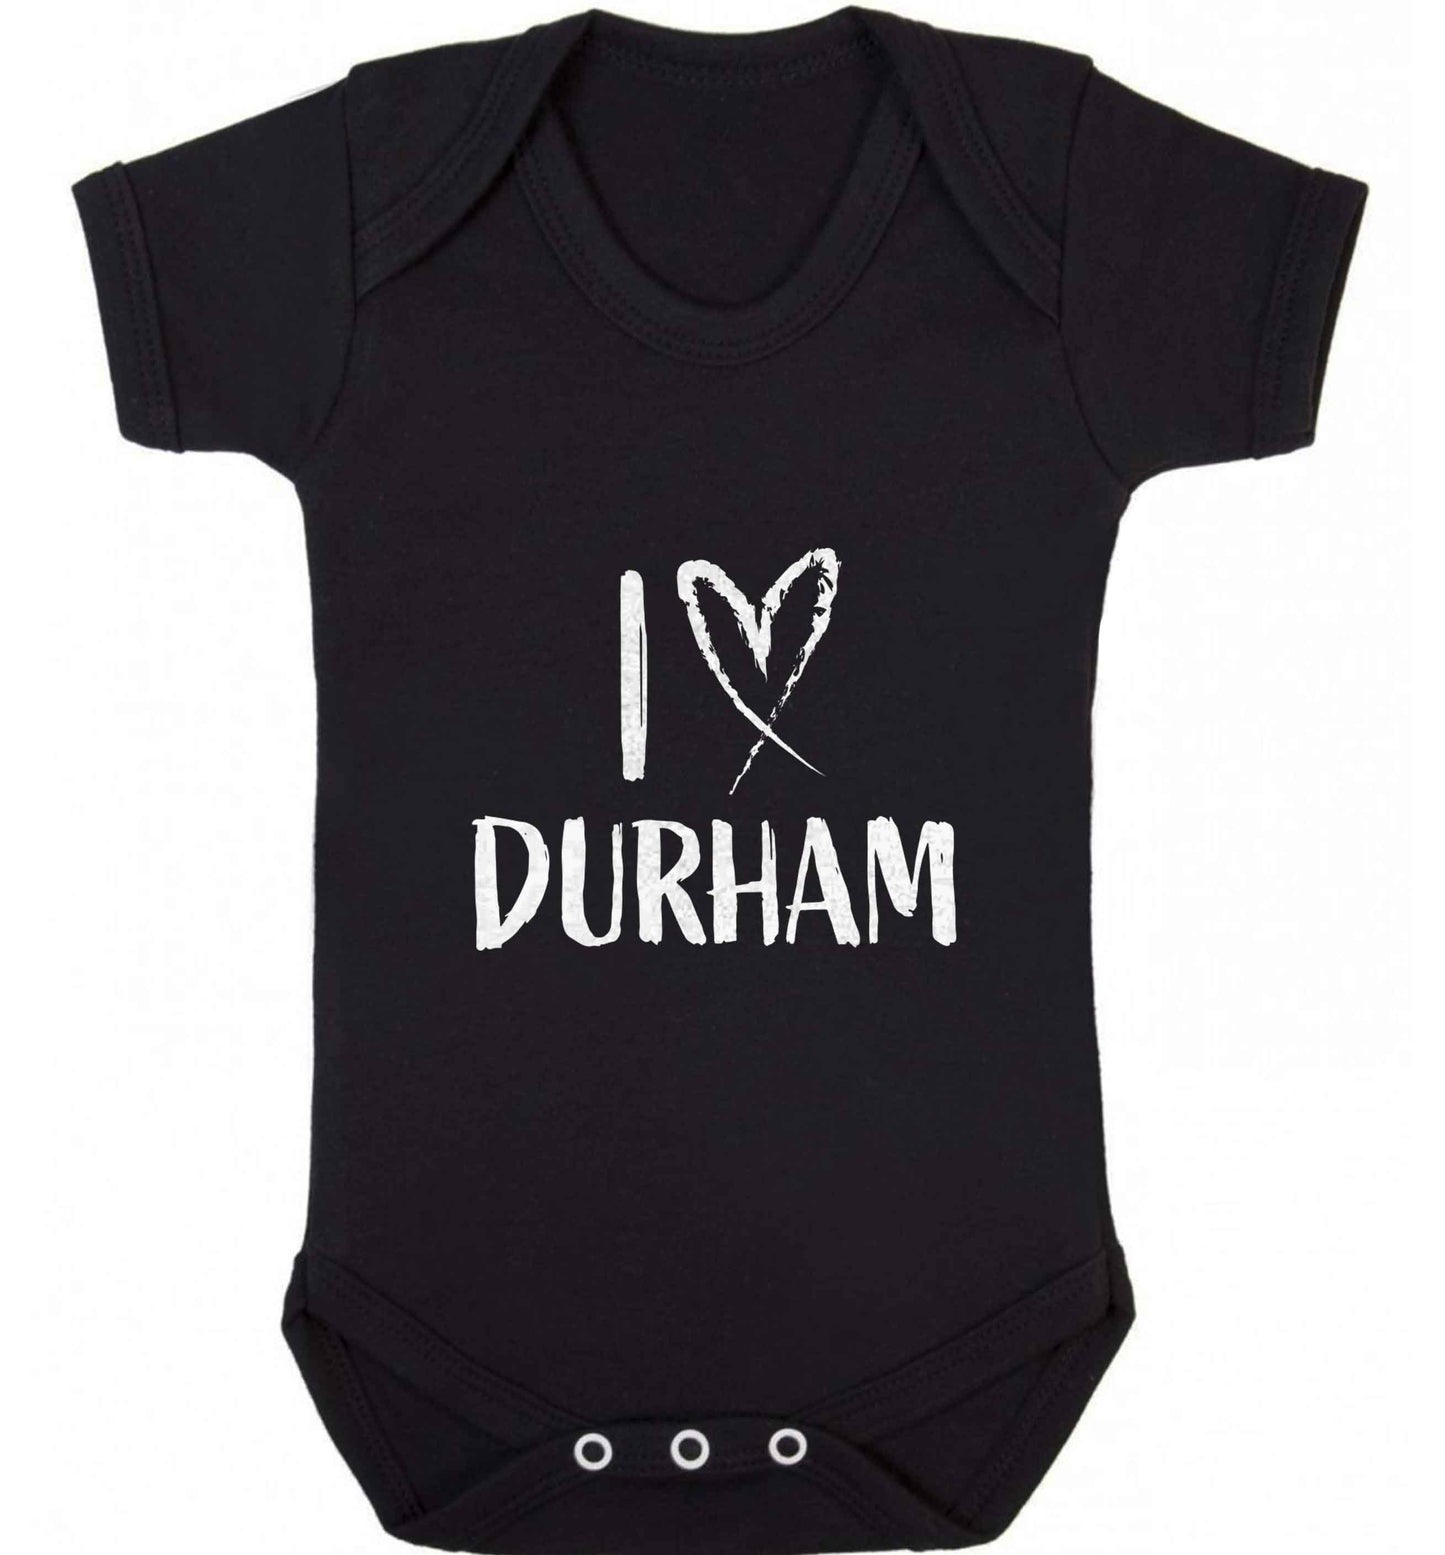 I love Durham baby vest black 18-24 months